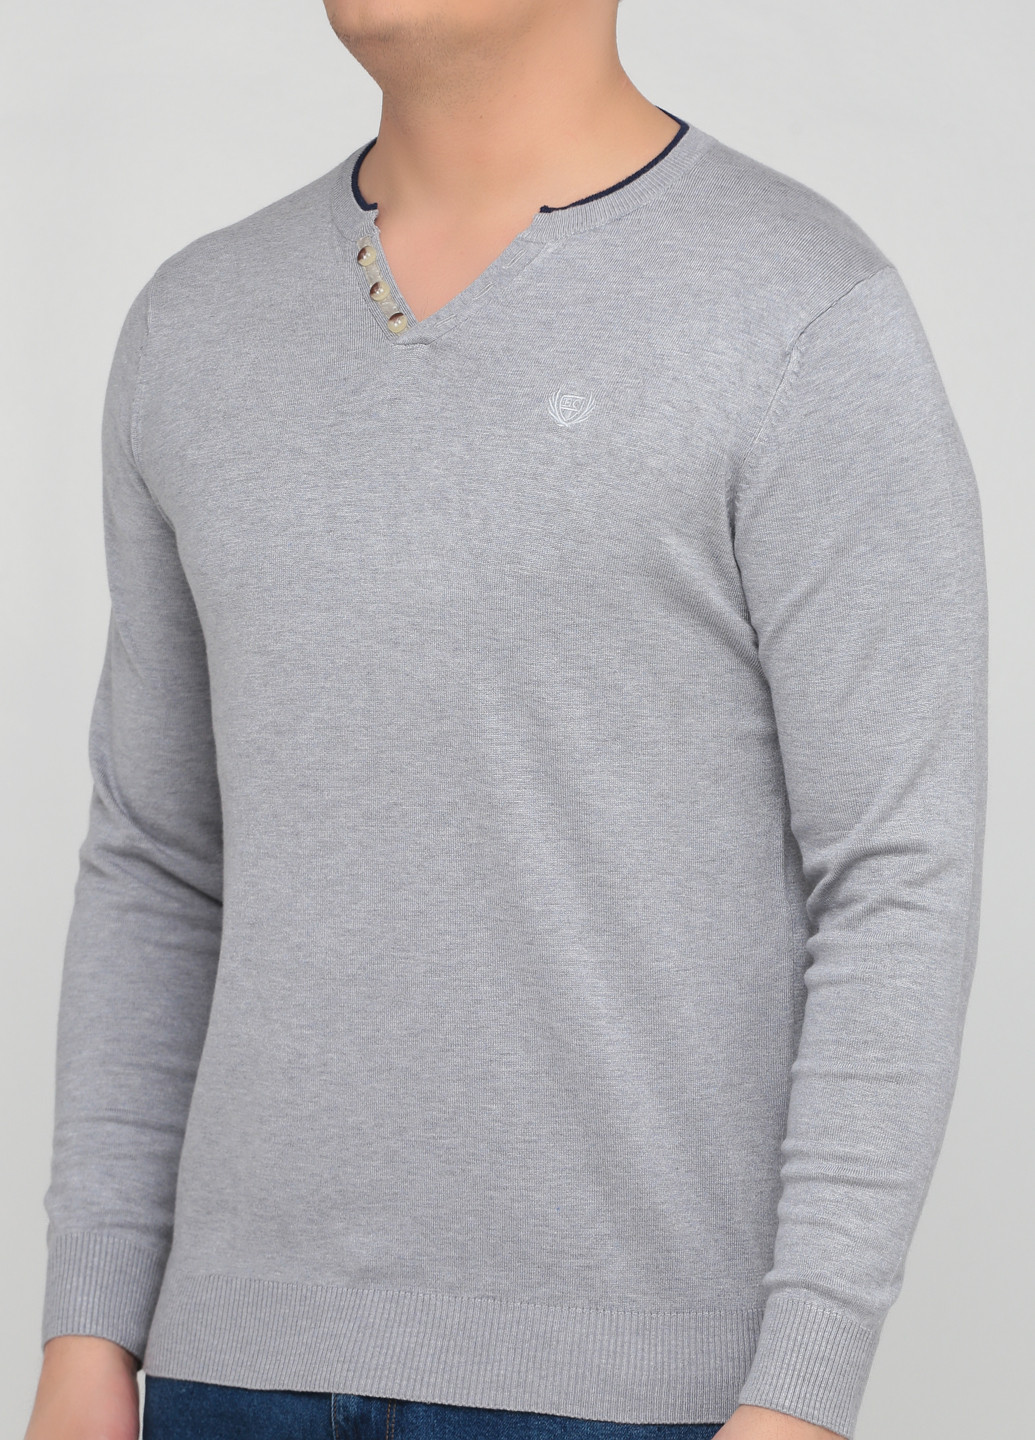 Світло-сірий демісезонний пуловер пуловер Benson & Cherry